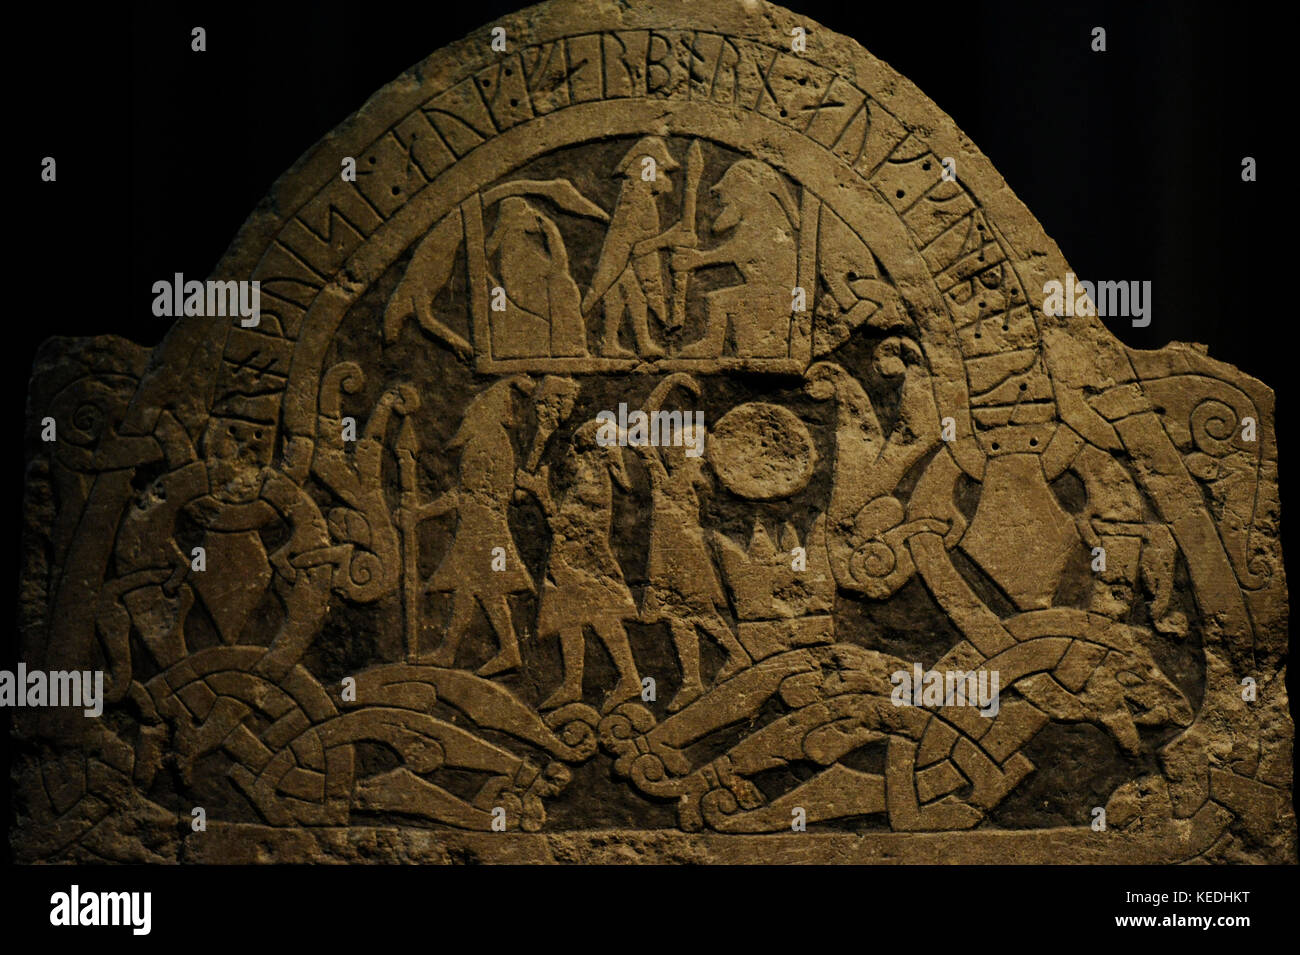 Stein mit der Darstellung der Götter, Odin, Thor und Frey an der Unterseite eingraviert. oben ein Opfer gezeigt wird zu Odin. ein Mann, der einen Speer in eine sitzende Figur. von sanda, Gotland Insel. Als Teil eines Sarg verwendet. schwedische Geschichte Museum Stockholm, Schweden. Stockfoto